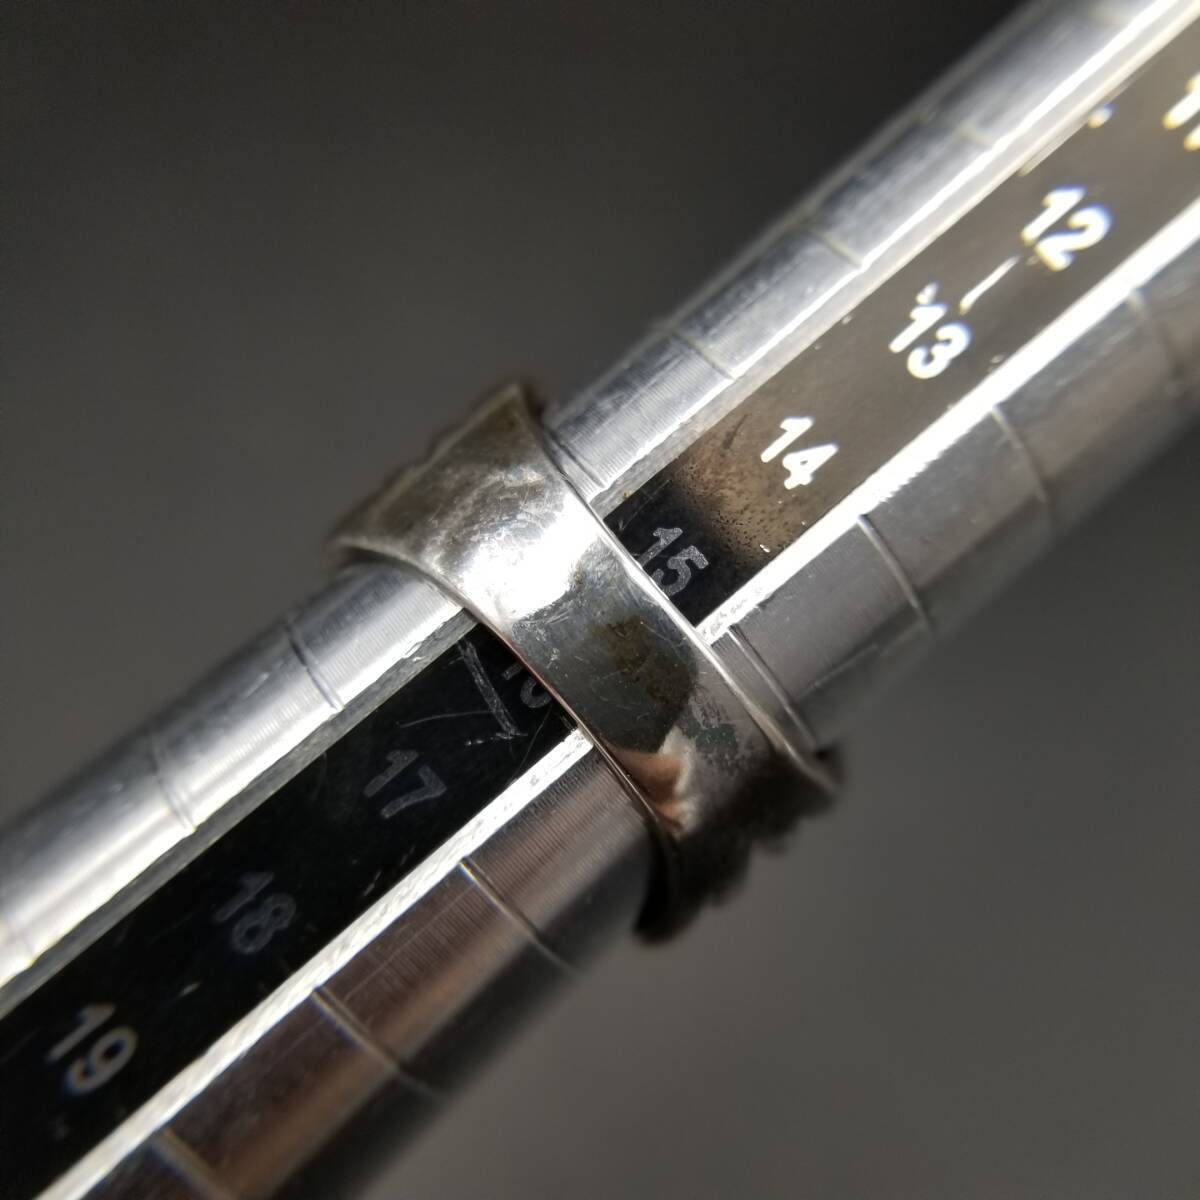  лента узор Cross полоса cut сверху товар Vintage серебряный металлизированный кольцо кольцо ювелирные изделия импорт Y14-J